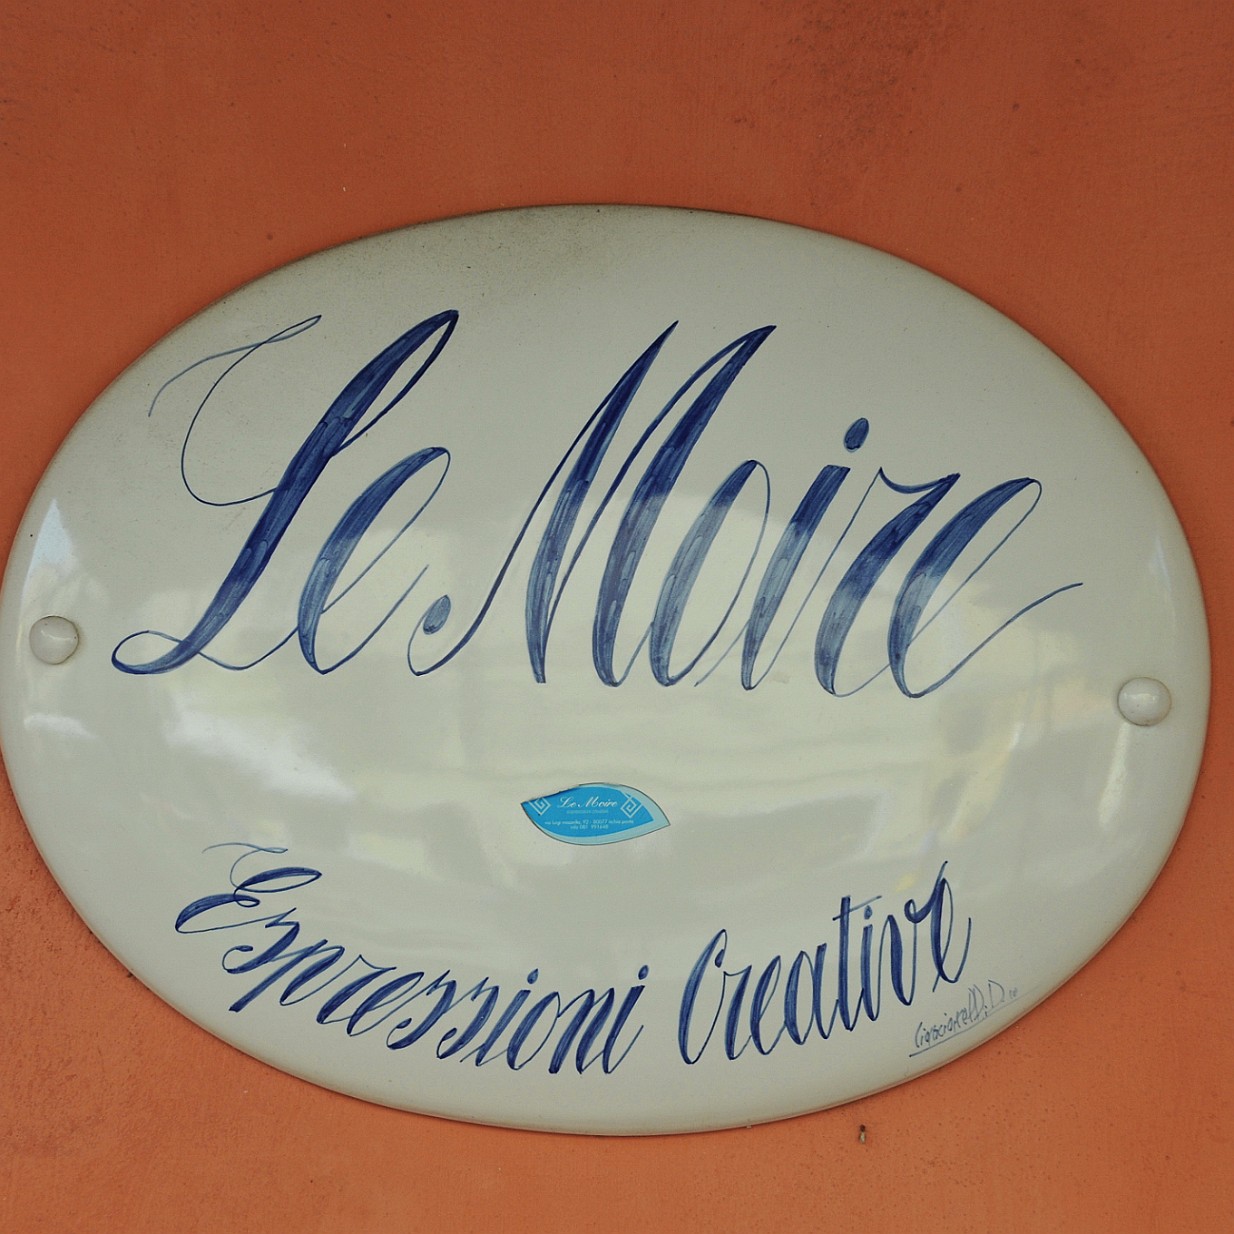 2014-10 Ischia [436] Ischia, Italien - Schilder, Signs, Typo